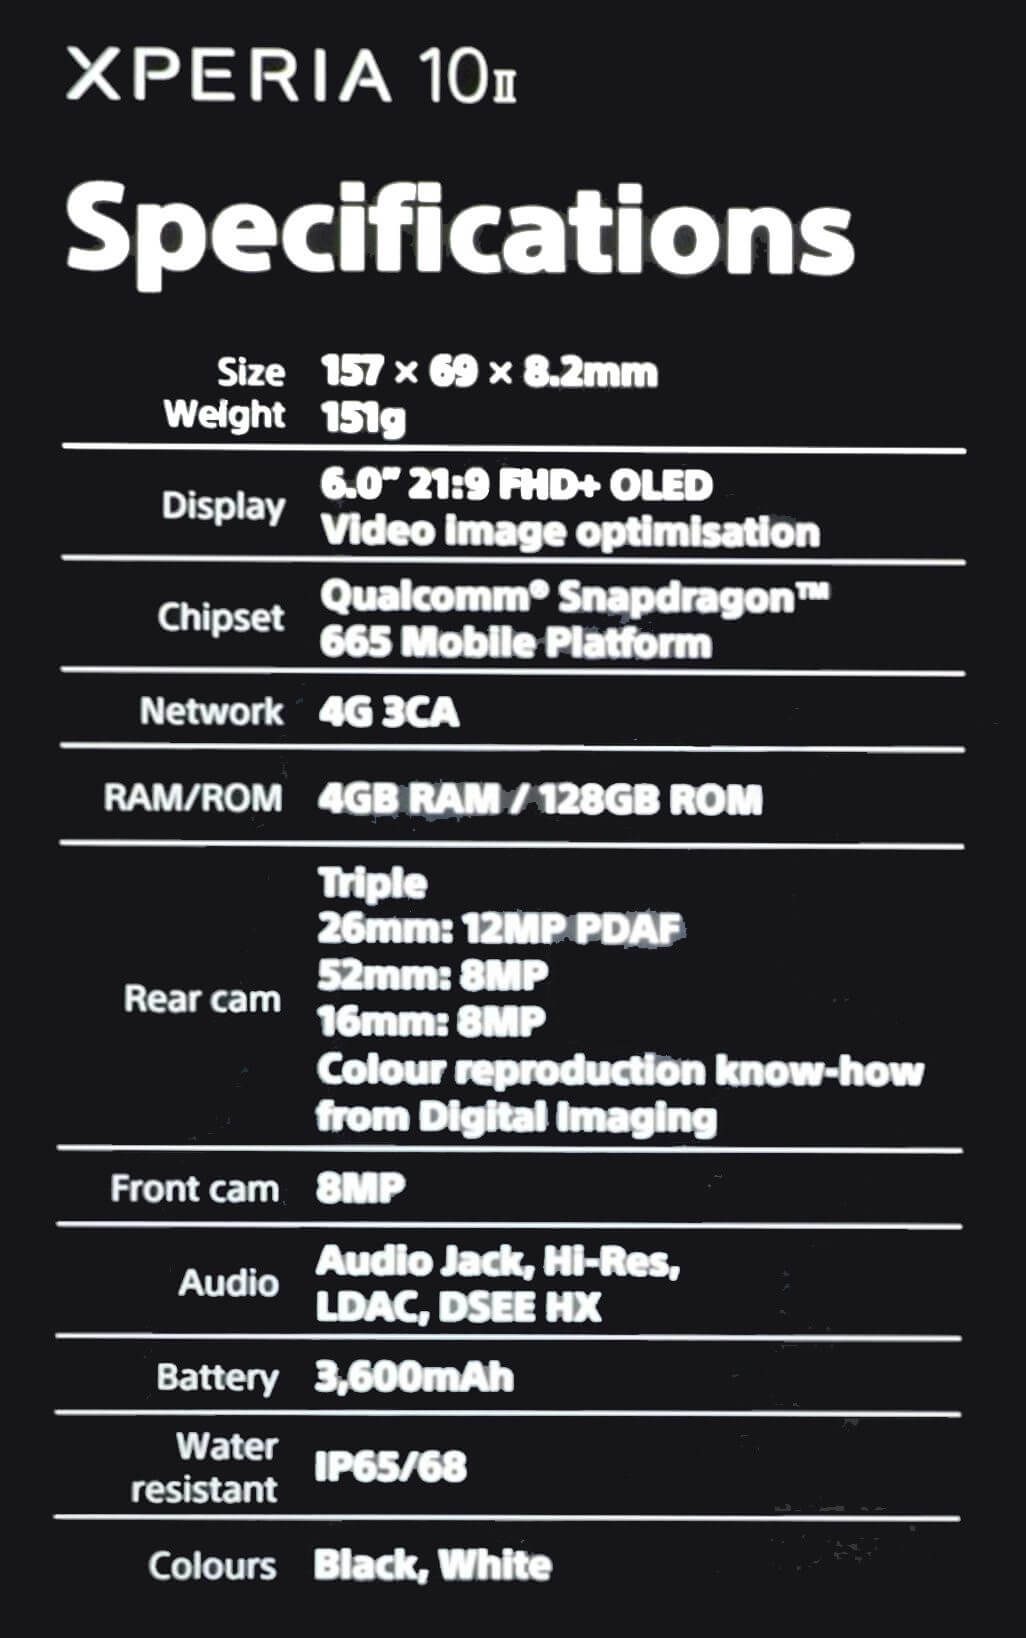 5G対応イヤホンジャック有り「Xperia 1 II」とスナドラ665「Xperia 10 II」のスペックと画像リーク | phablet